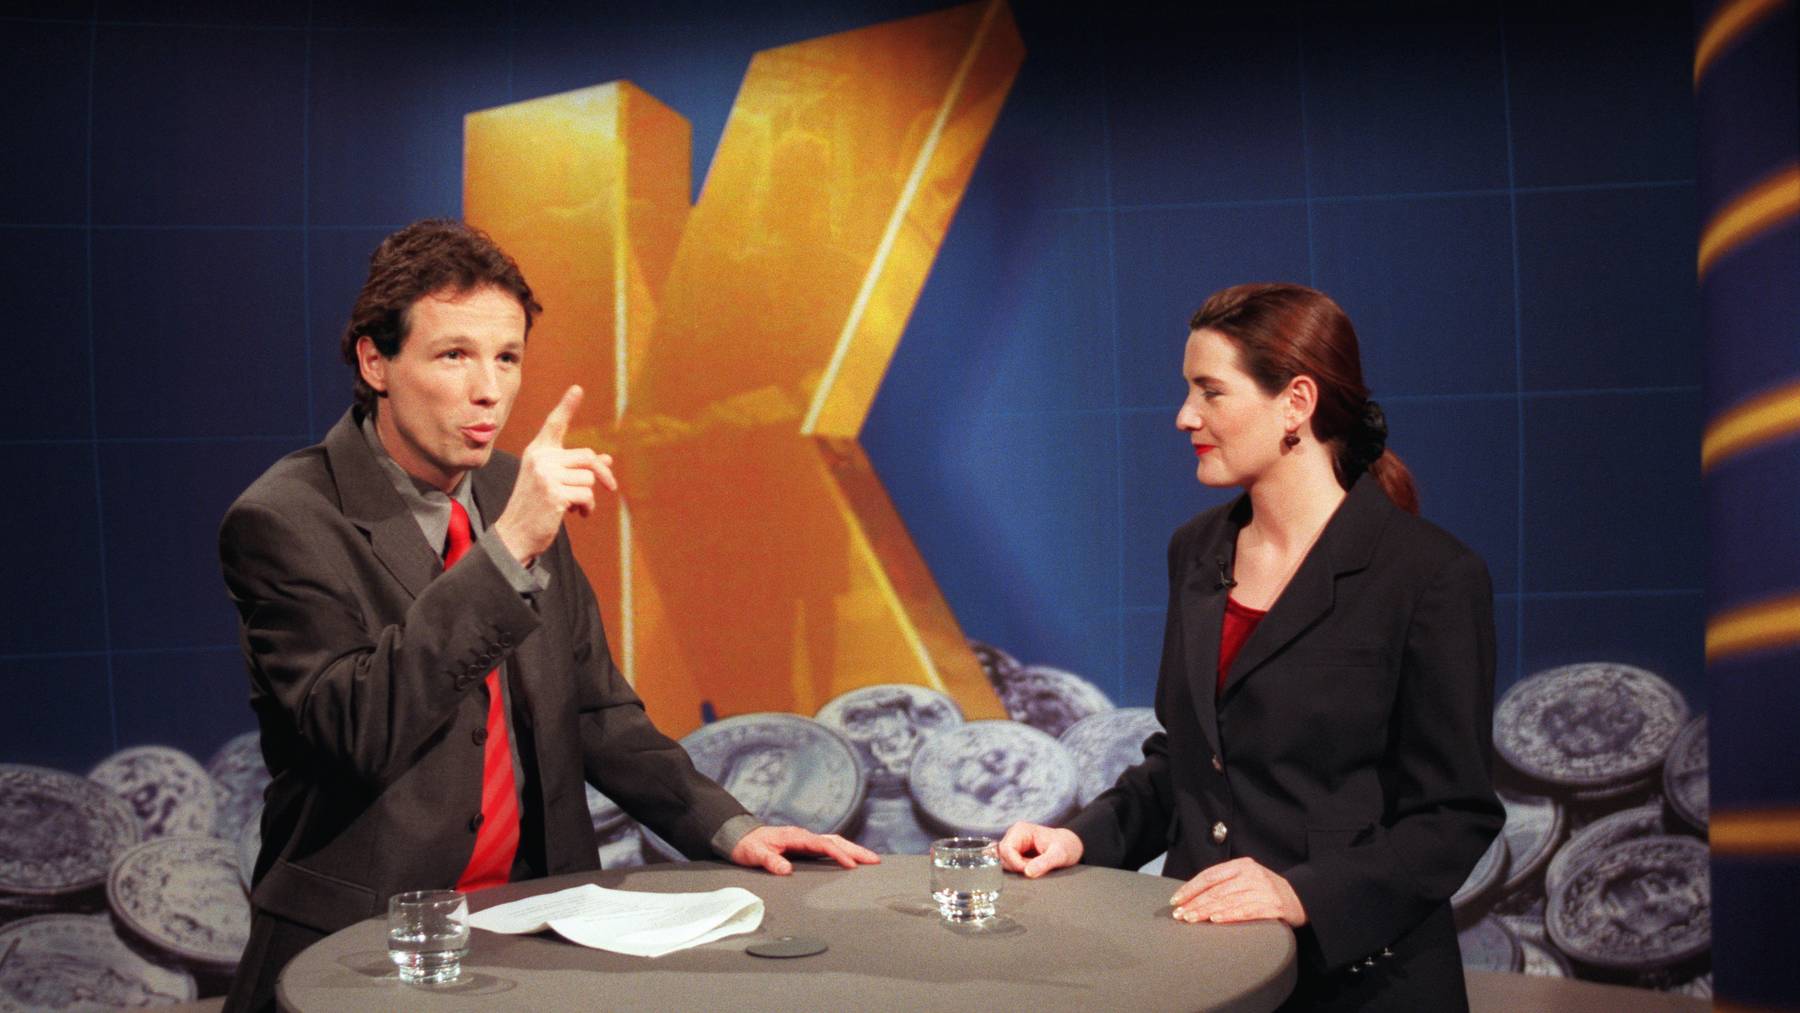 Ueli Schmezer, links, und Isabelle Moncada, rechts, am 5. Januar 1999 anlässlich der «Kassensturz»-Geburtstagssendung im Fernsehstudio Zuerich. Das Konsumentenmagazin von SF DRS feierte sein 25-jähriges Bestehen mit einer Geburtstagssendung.